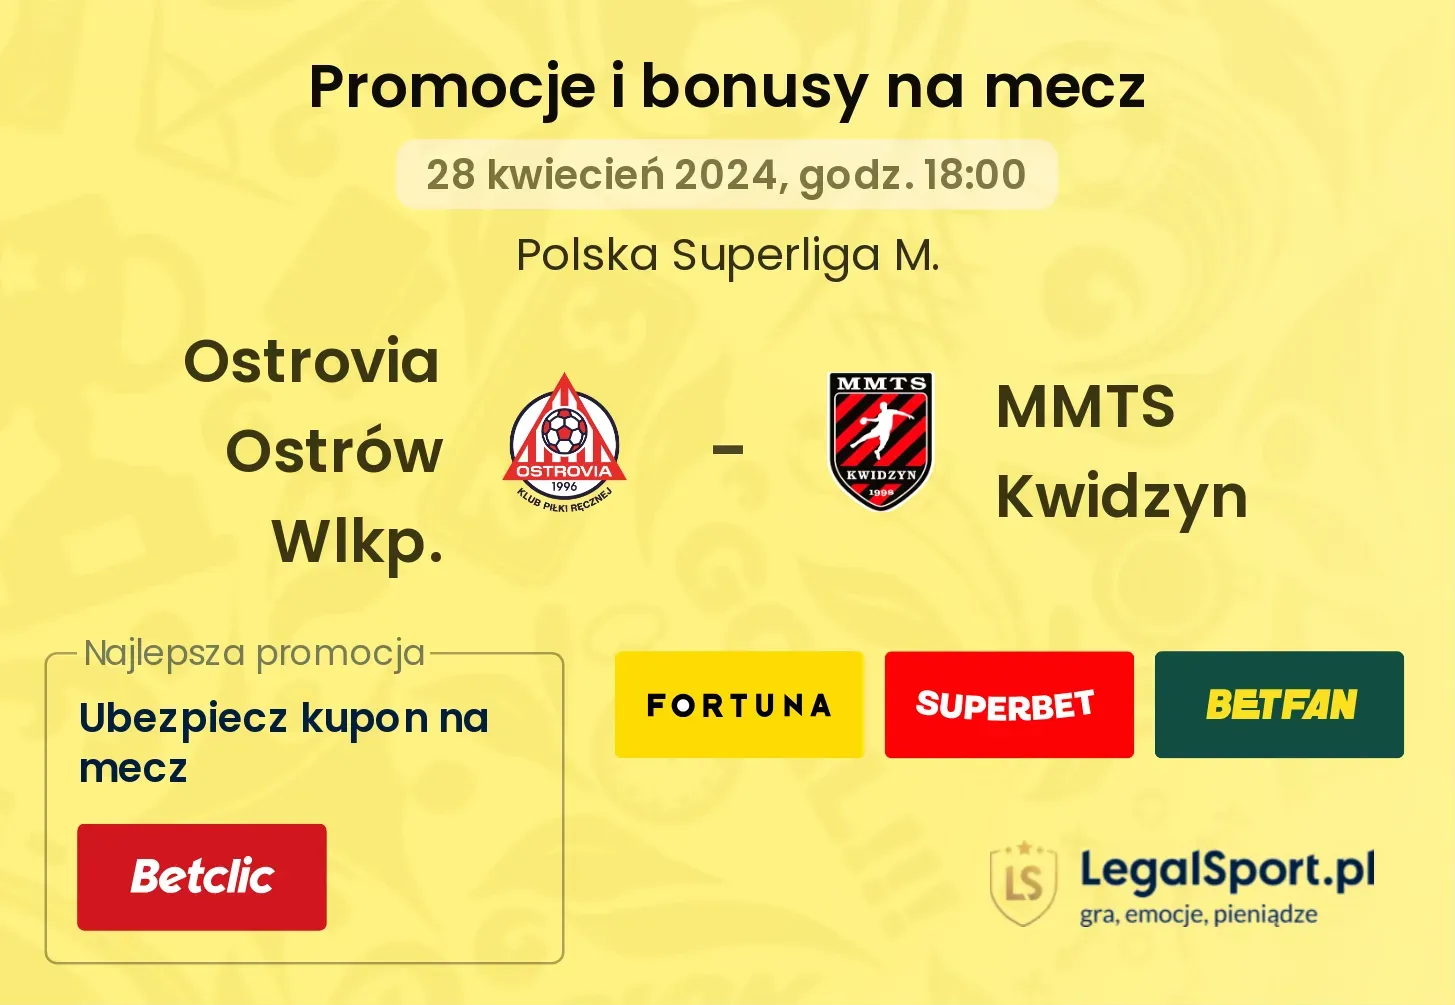 Ostrovia Ostrów Wlkp. - MMTS Kwidzyn promocje bonusy na mecz